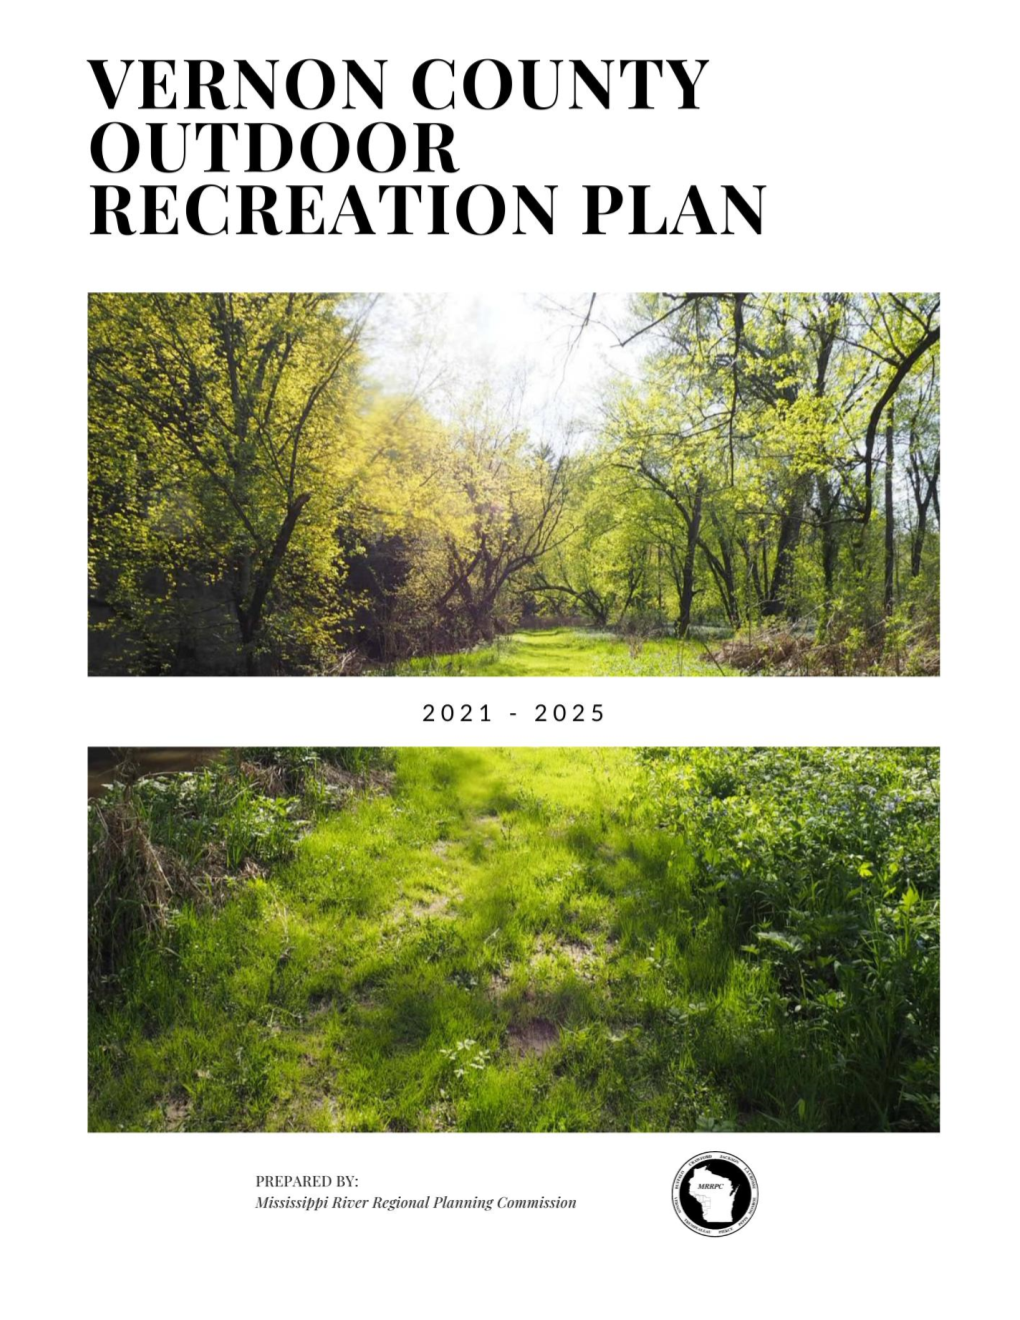 Vernon County Outdoor Recreation Plan 2021-2025